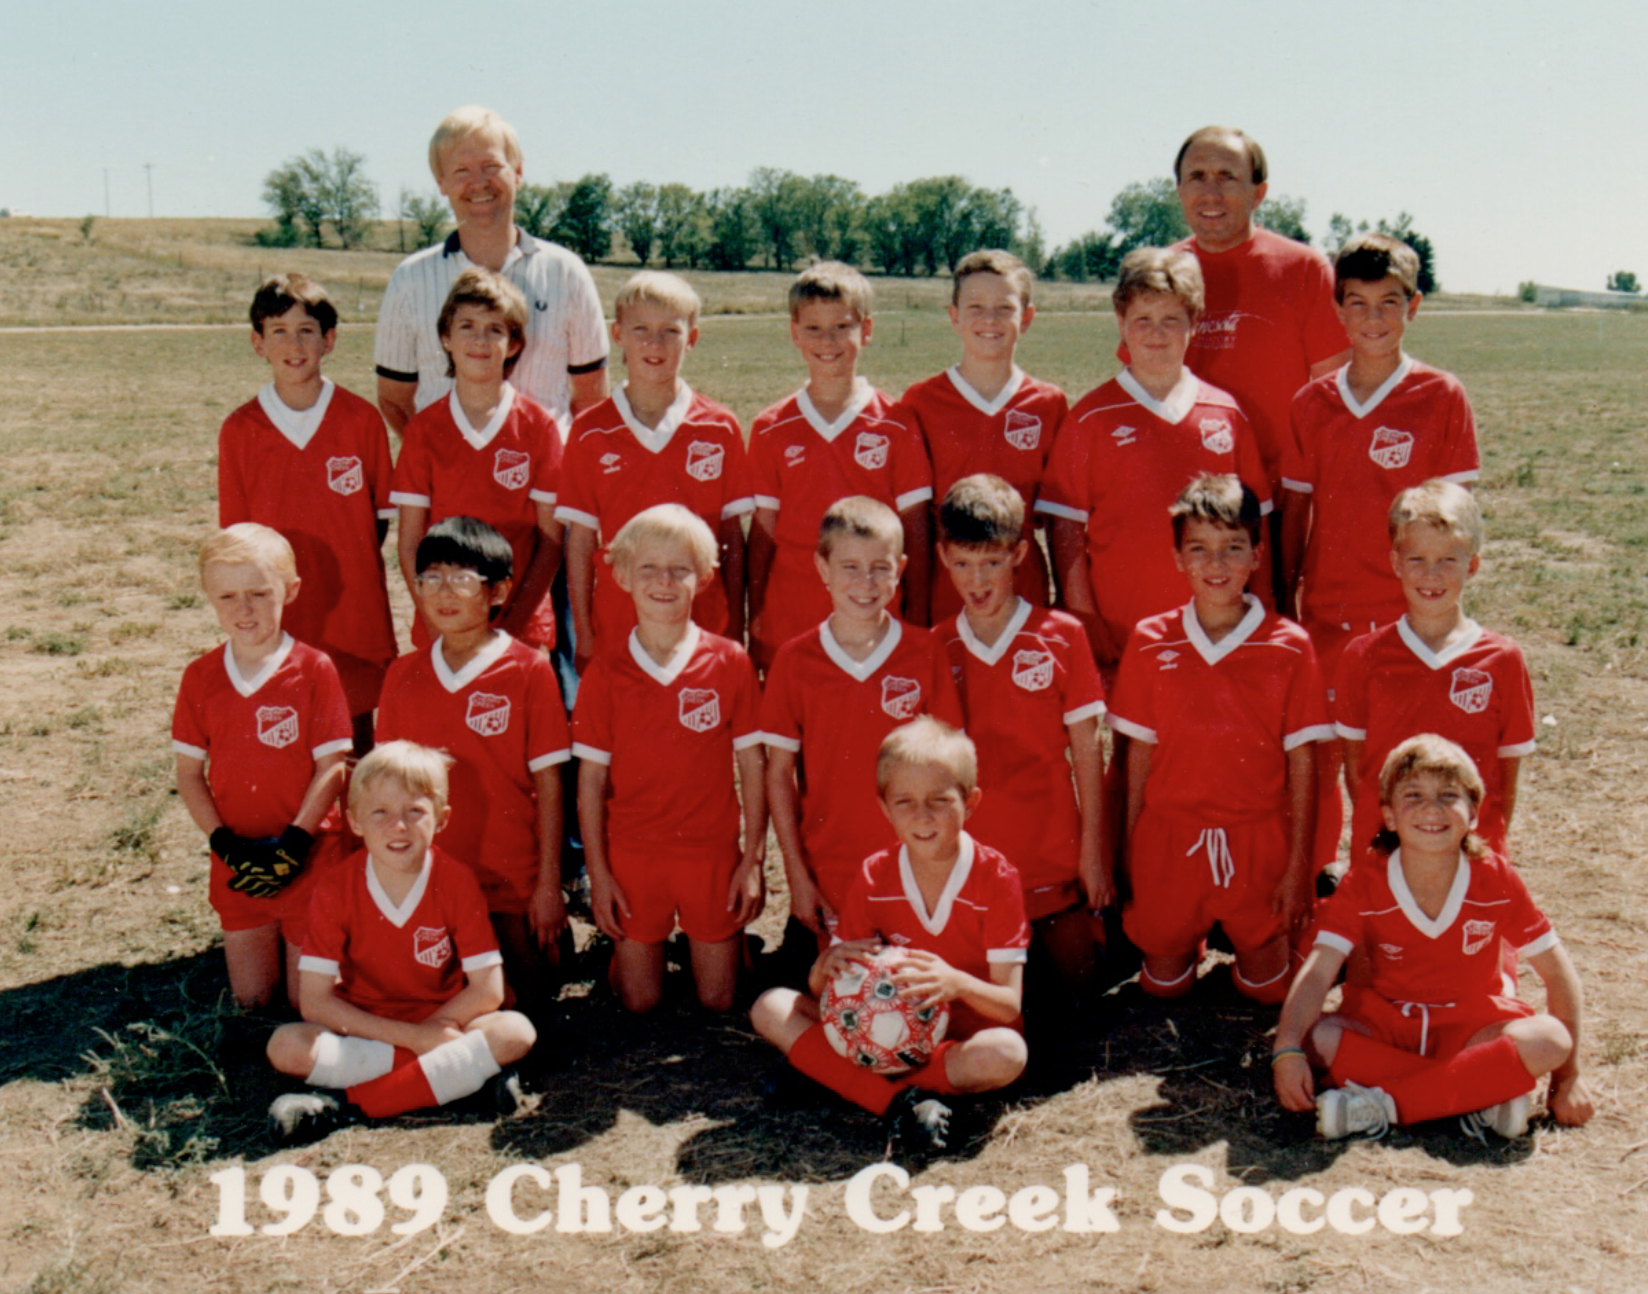 Coaching Ian's soccer team, 1989